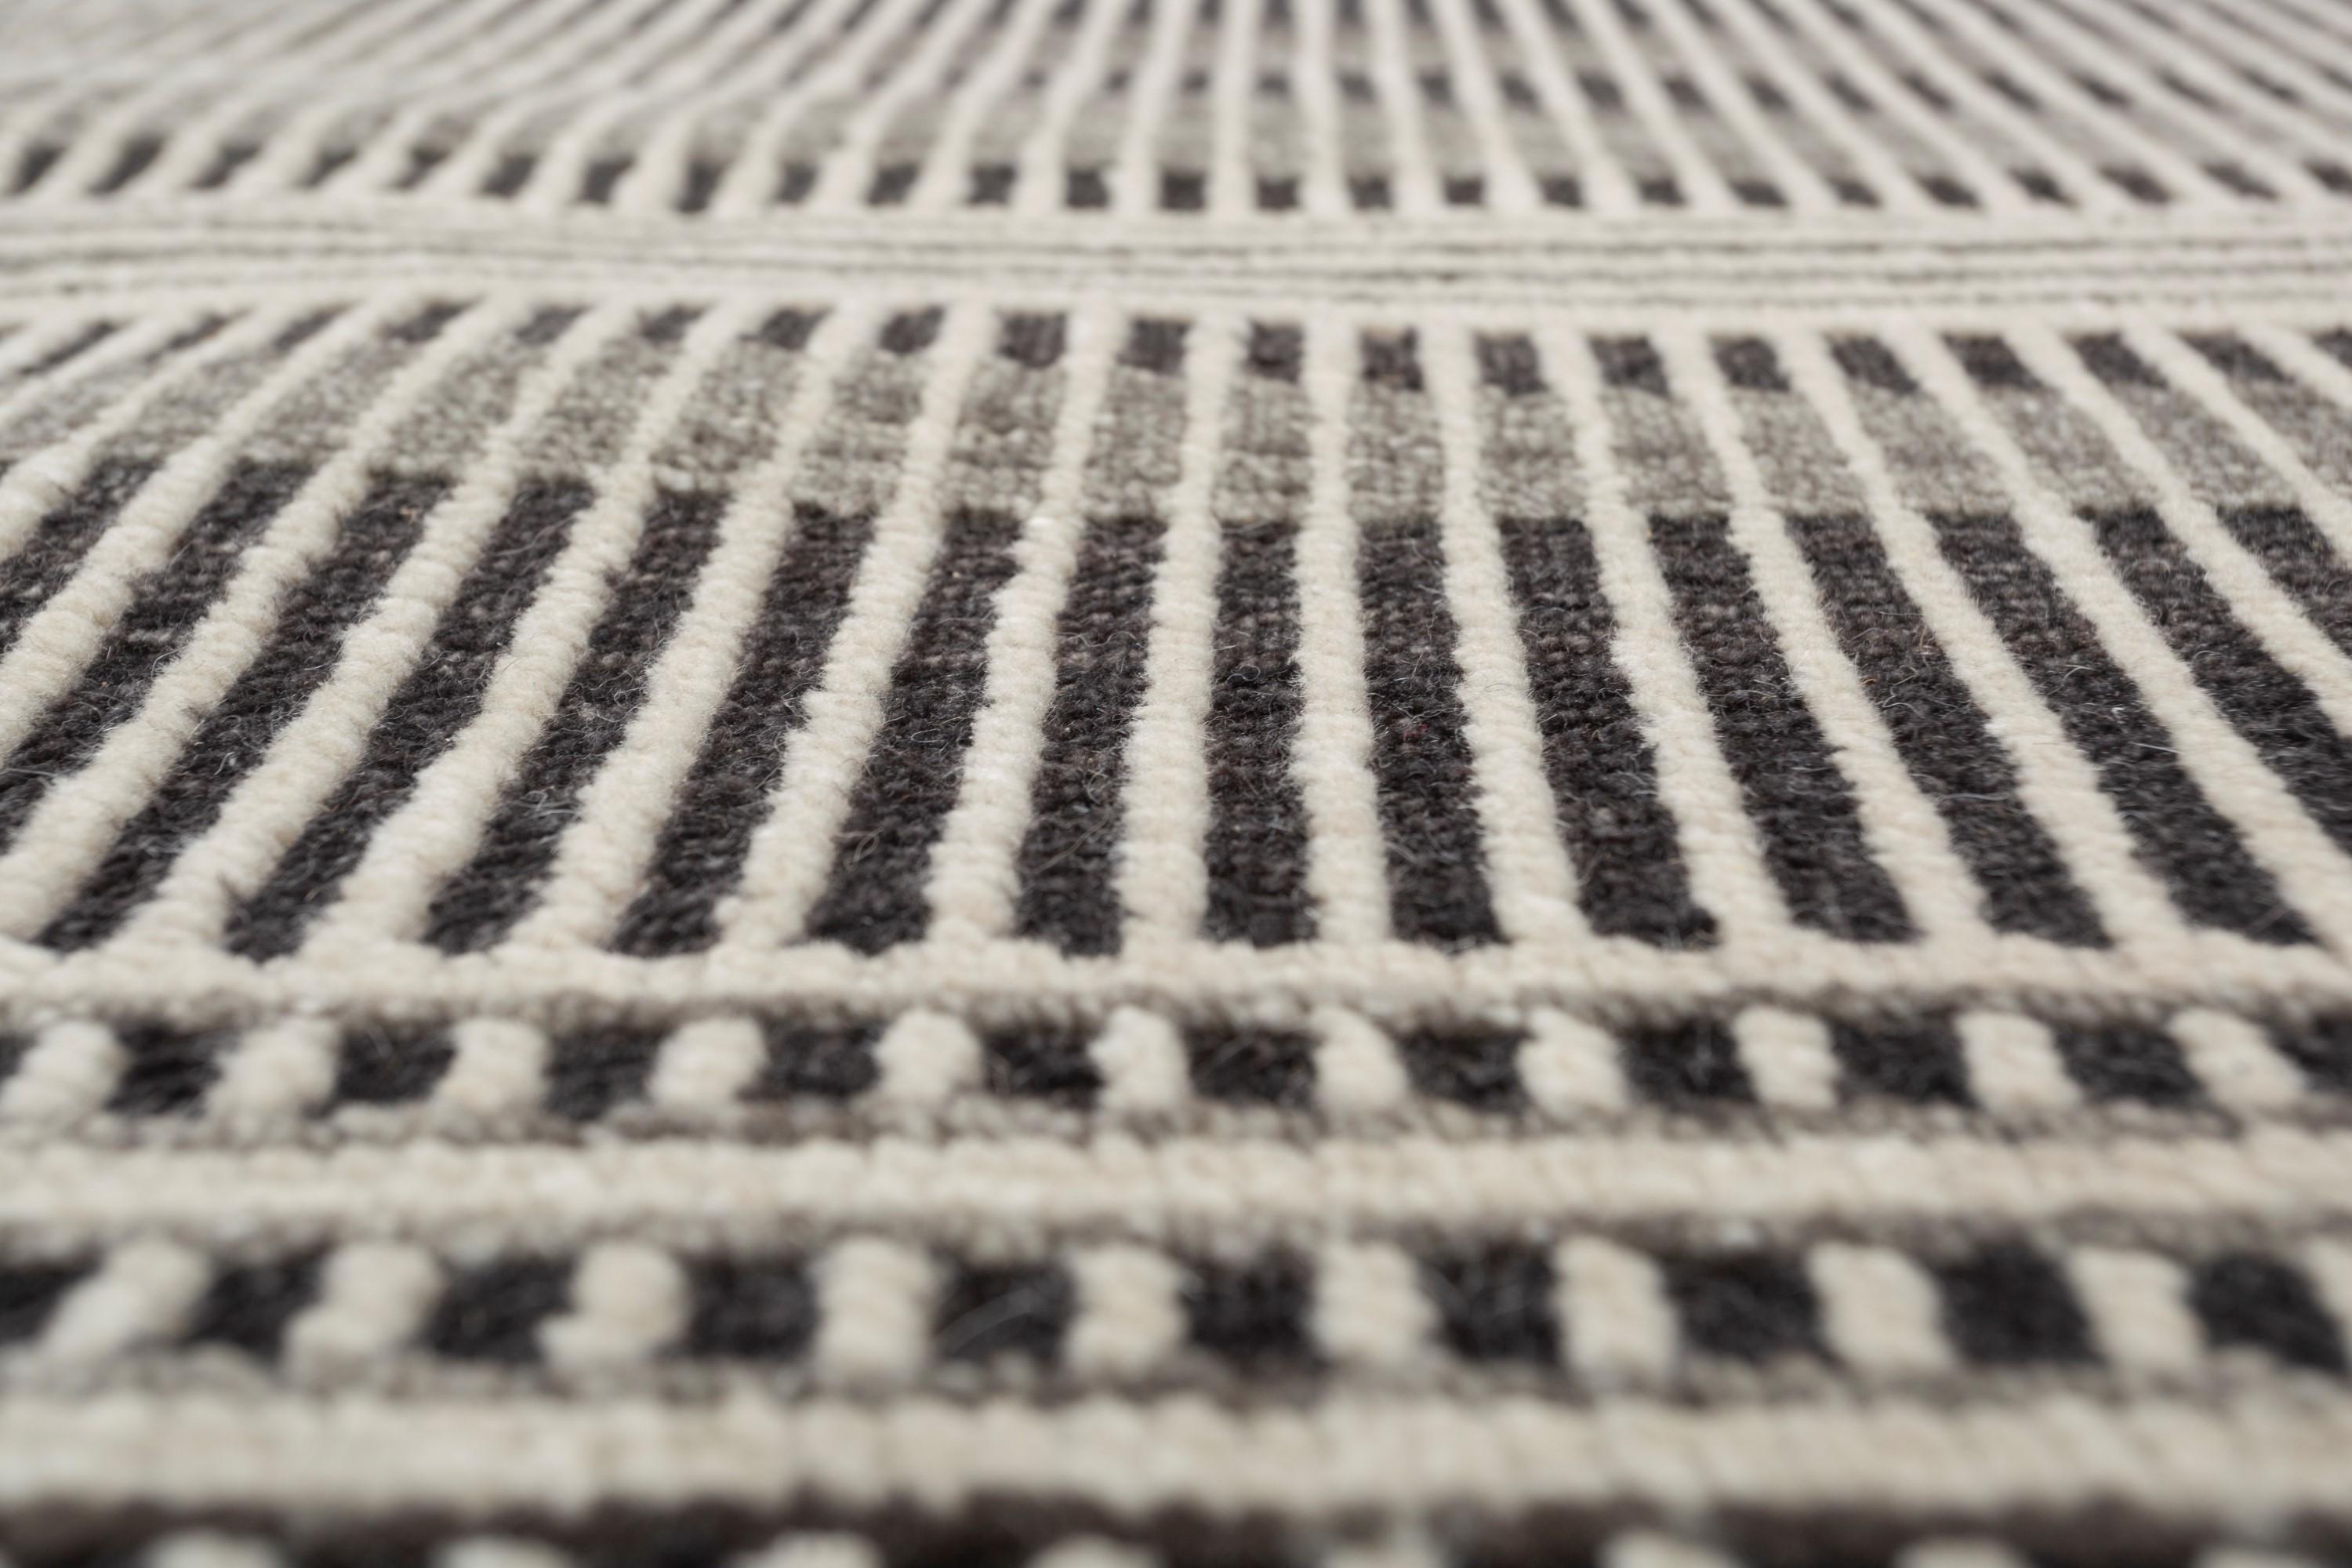 Avec son jeu de rayures de différentes largeurs et profondeurs, ce tapis moderne fait main crée une illusion visuelle dynamique et captivante. Les rayures passent sans transition par un subtil effet de dégradé, ce qui ajoute de la profondeur et de